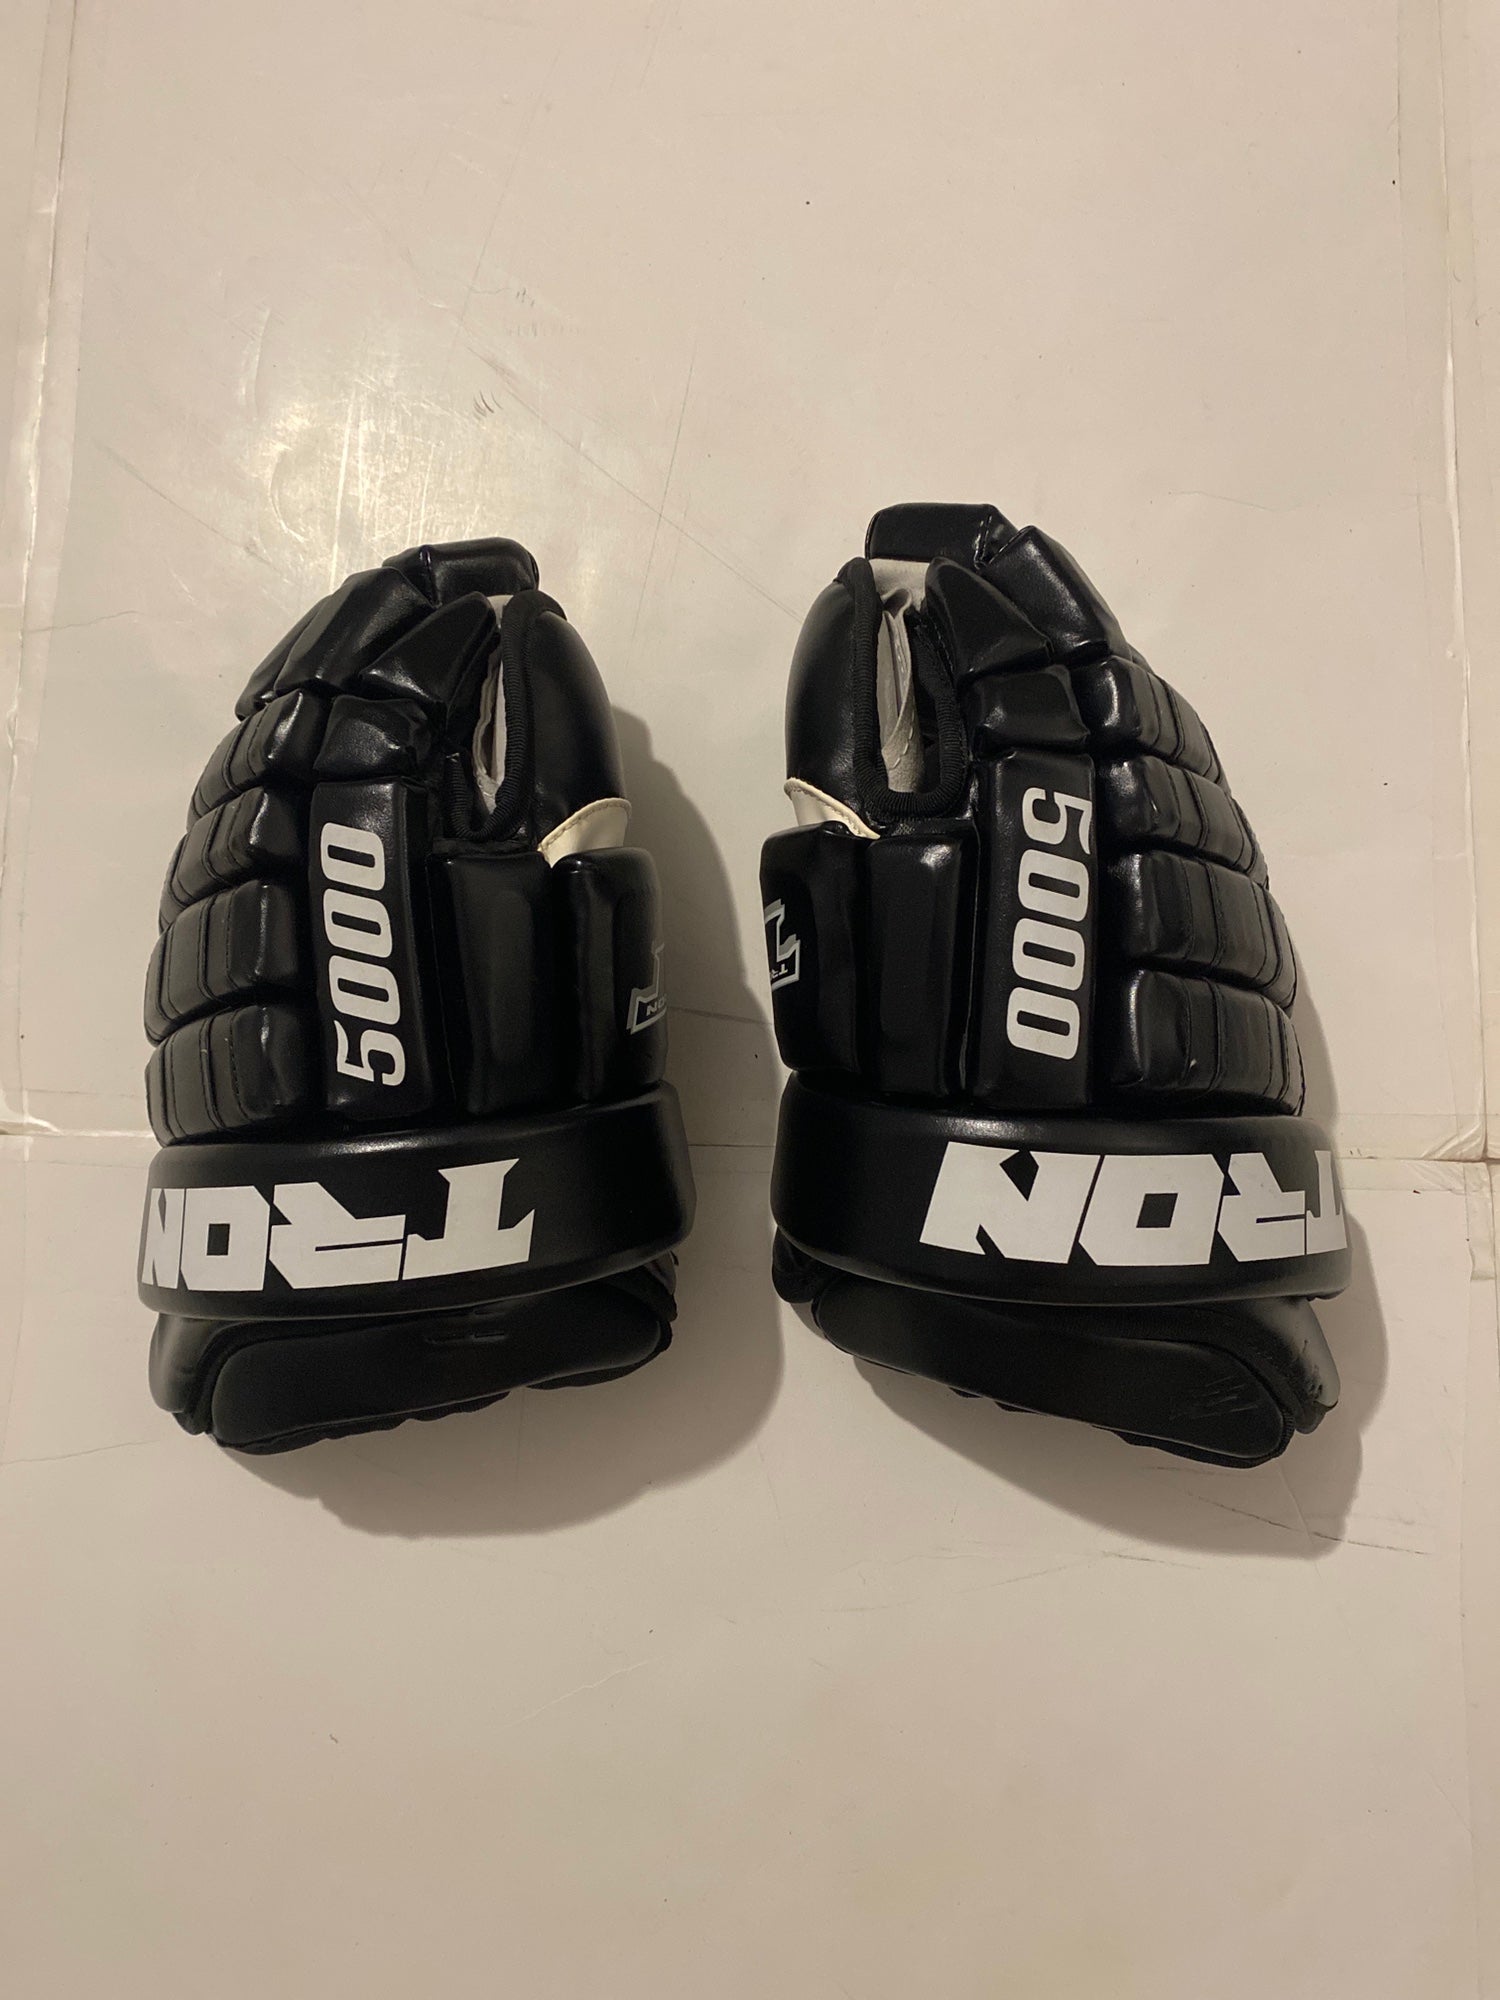 Tron 5000 Senior Hockey Gloves 